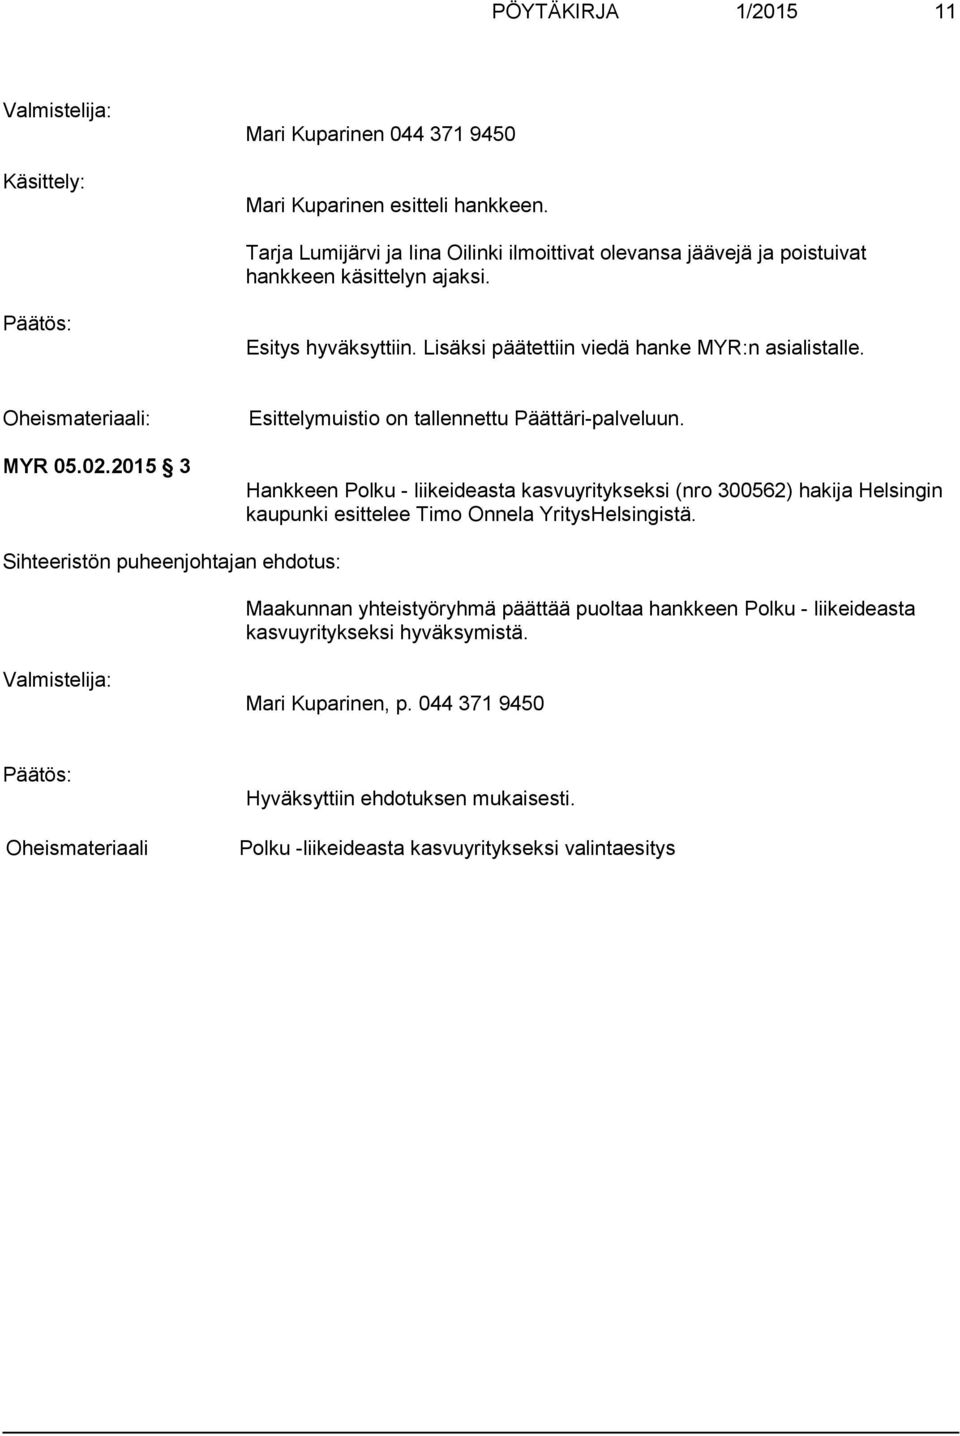 Oheismateriaali: MYR 05.02.2015 3 Esittelymuistio on tallennettu Päättäri-palveluun.